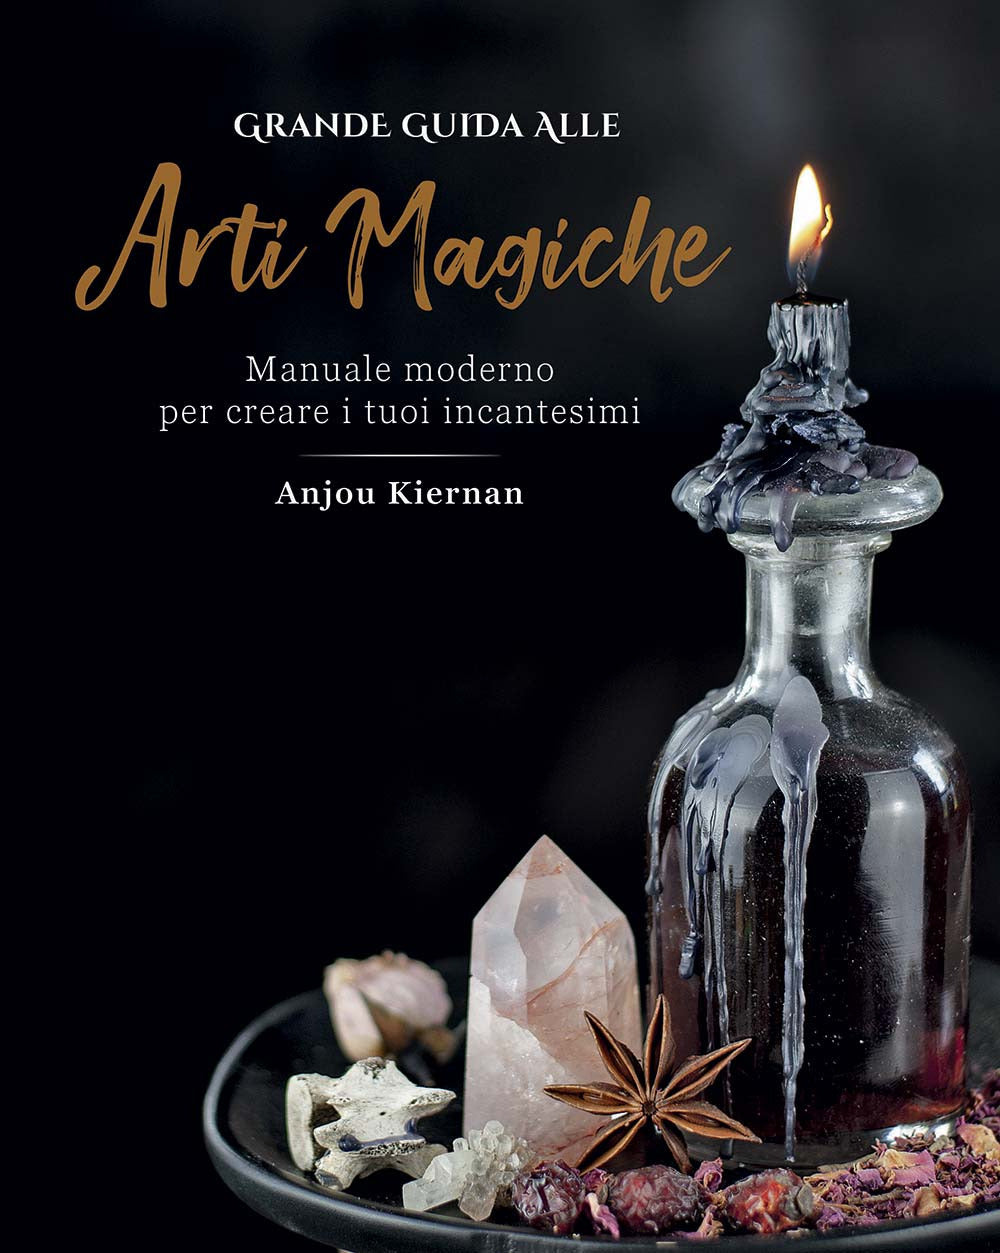 Grande guida alle arti magiche. Manuale moderno per creare i tuoi incantesimi. Ediz. illustrata.